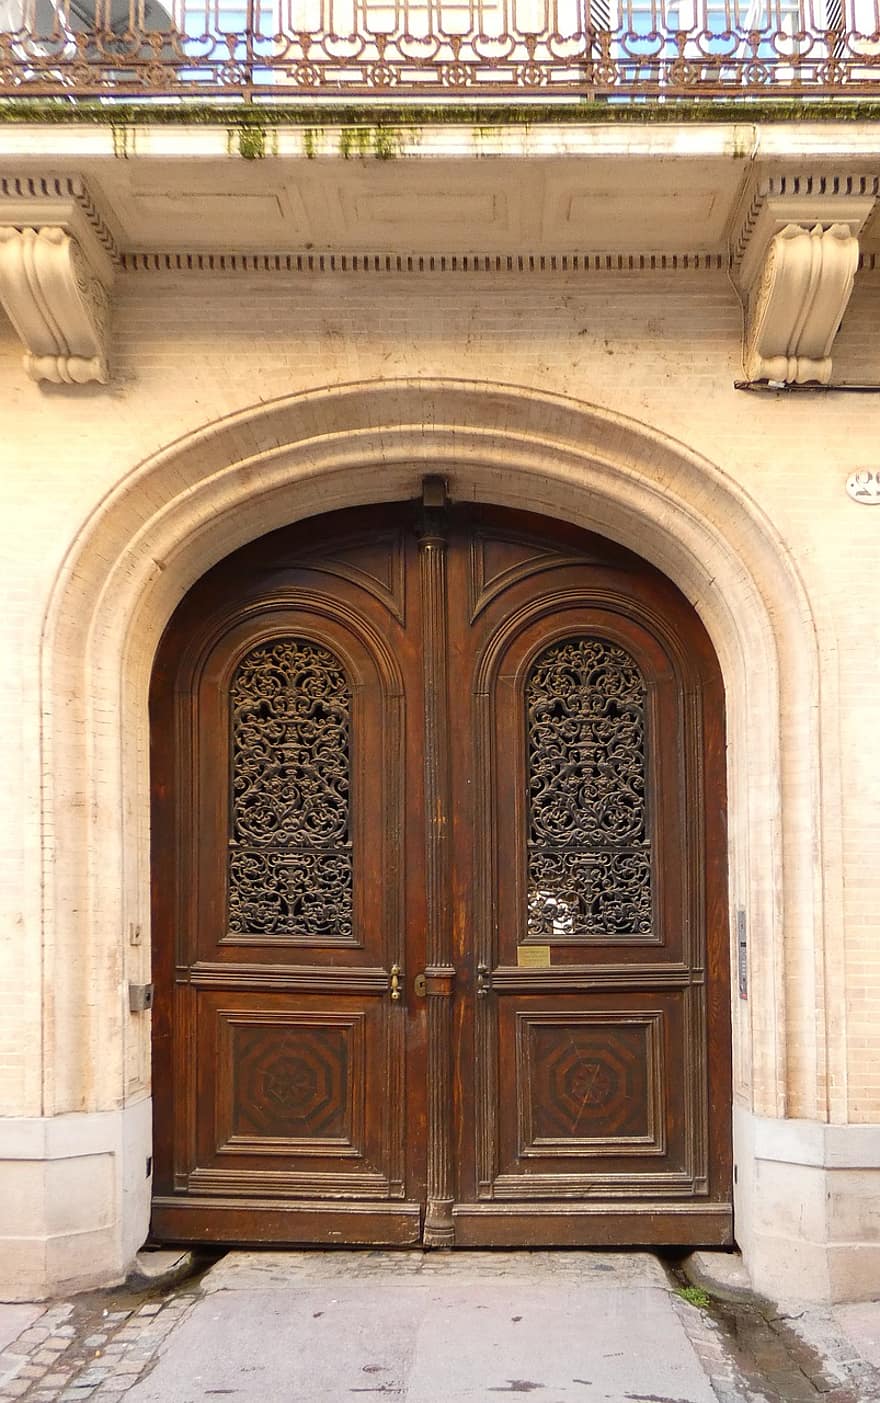 drzwi, drewno, wejście, stary, historyczny, architektura, Occitania, Zamknięte, chrześcijaństwo, na zewnątrz budynku, łuk